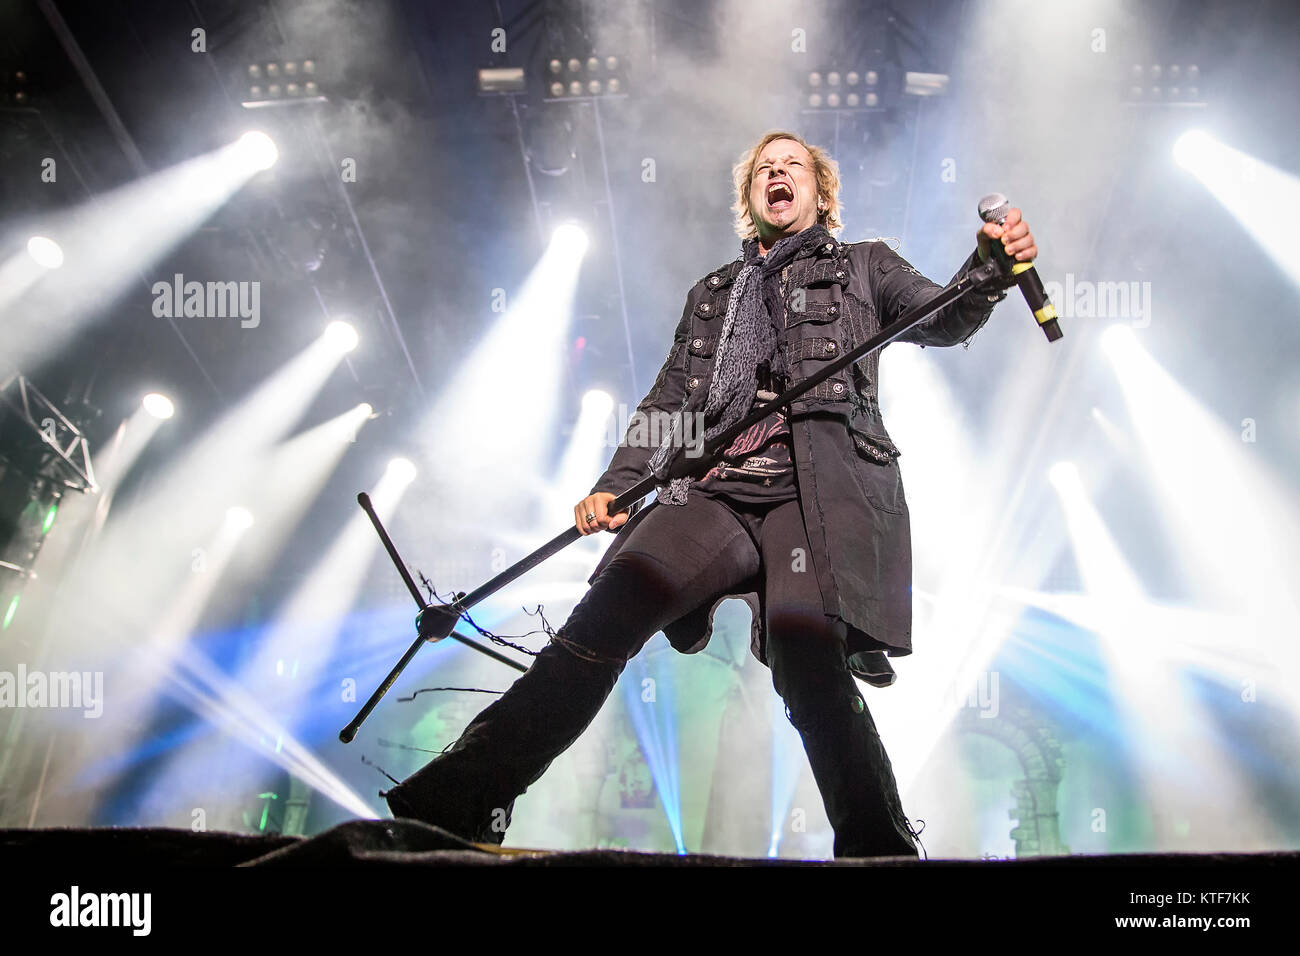 Il tedesco symphonic metal band Avantasia esegue un concerto dal vivo al Sweden Rock Festival 2016. Qui la cantante Tobias Sammet è visto dal vivo sul palco. La Svezia, 11/06 2016. Foto Stock